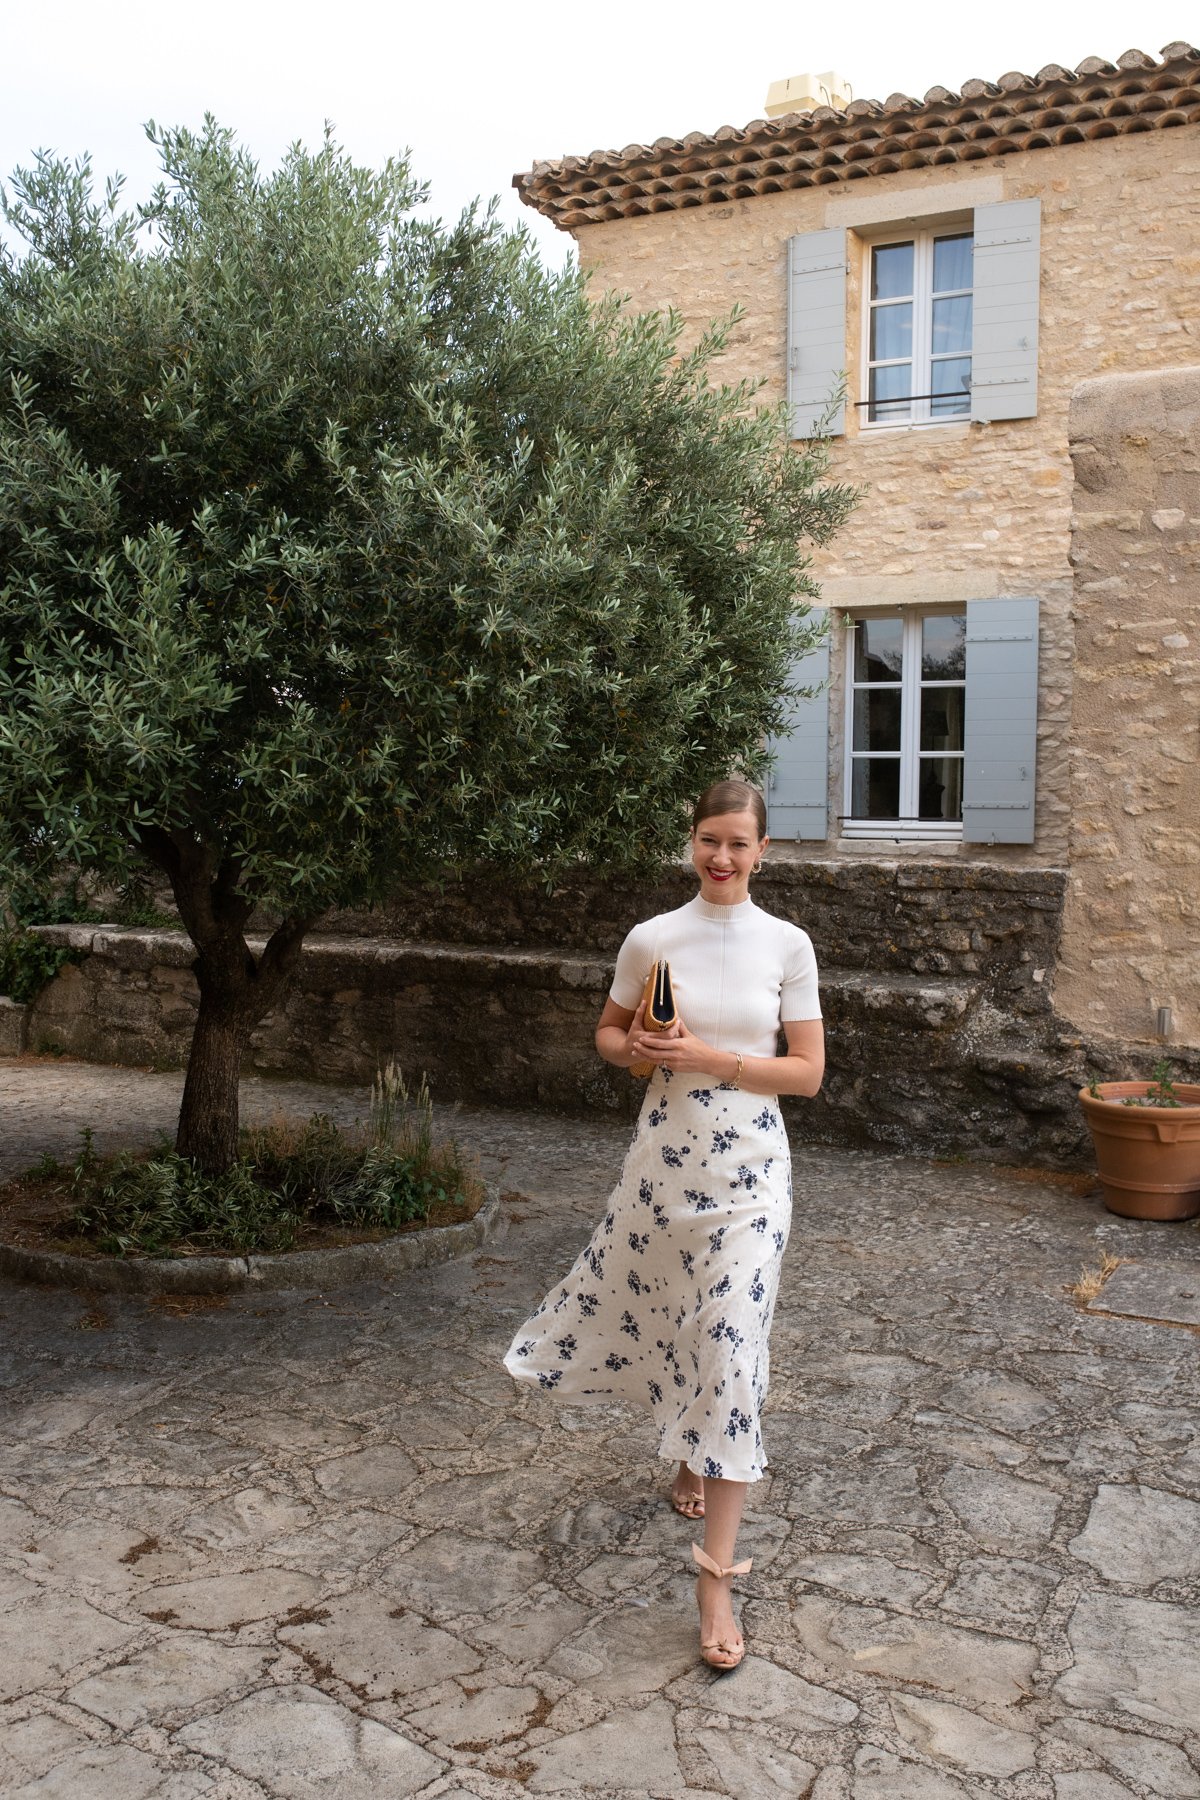 Stacie Flinner x Crillon Le Brave Best Hotels in Provence-5.jpg